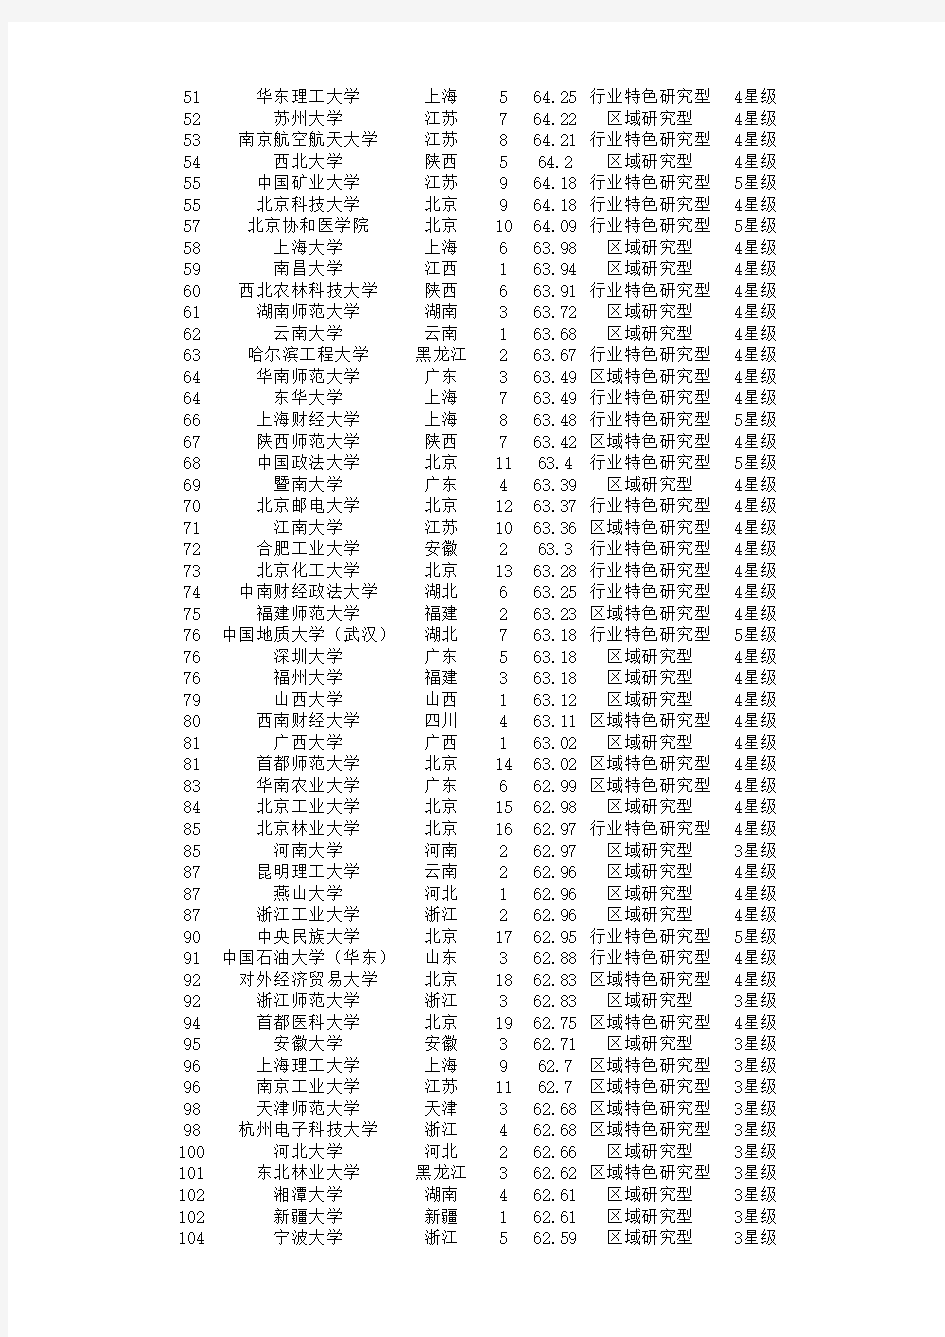 2017年中国校友会网大学排行榜700强榜单